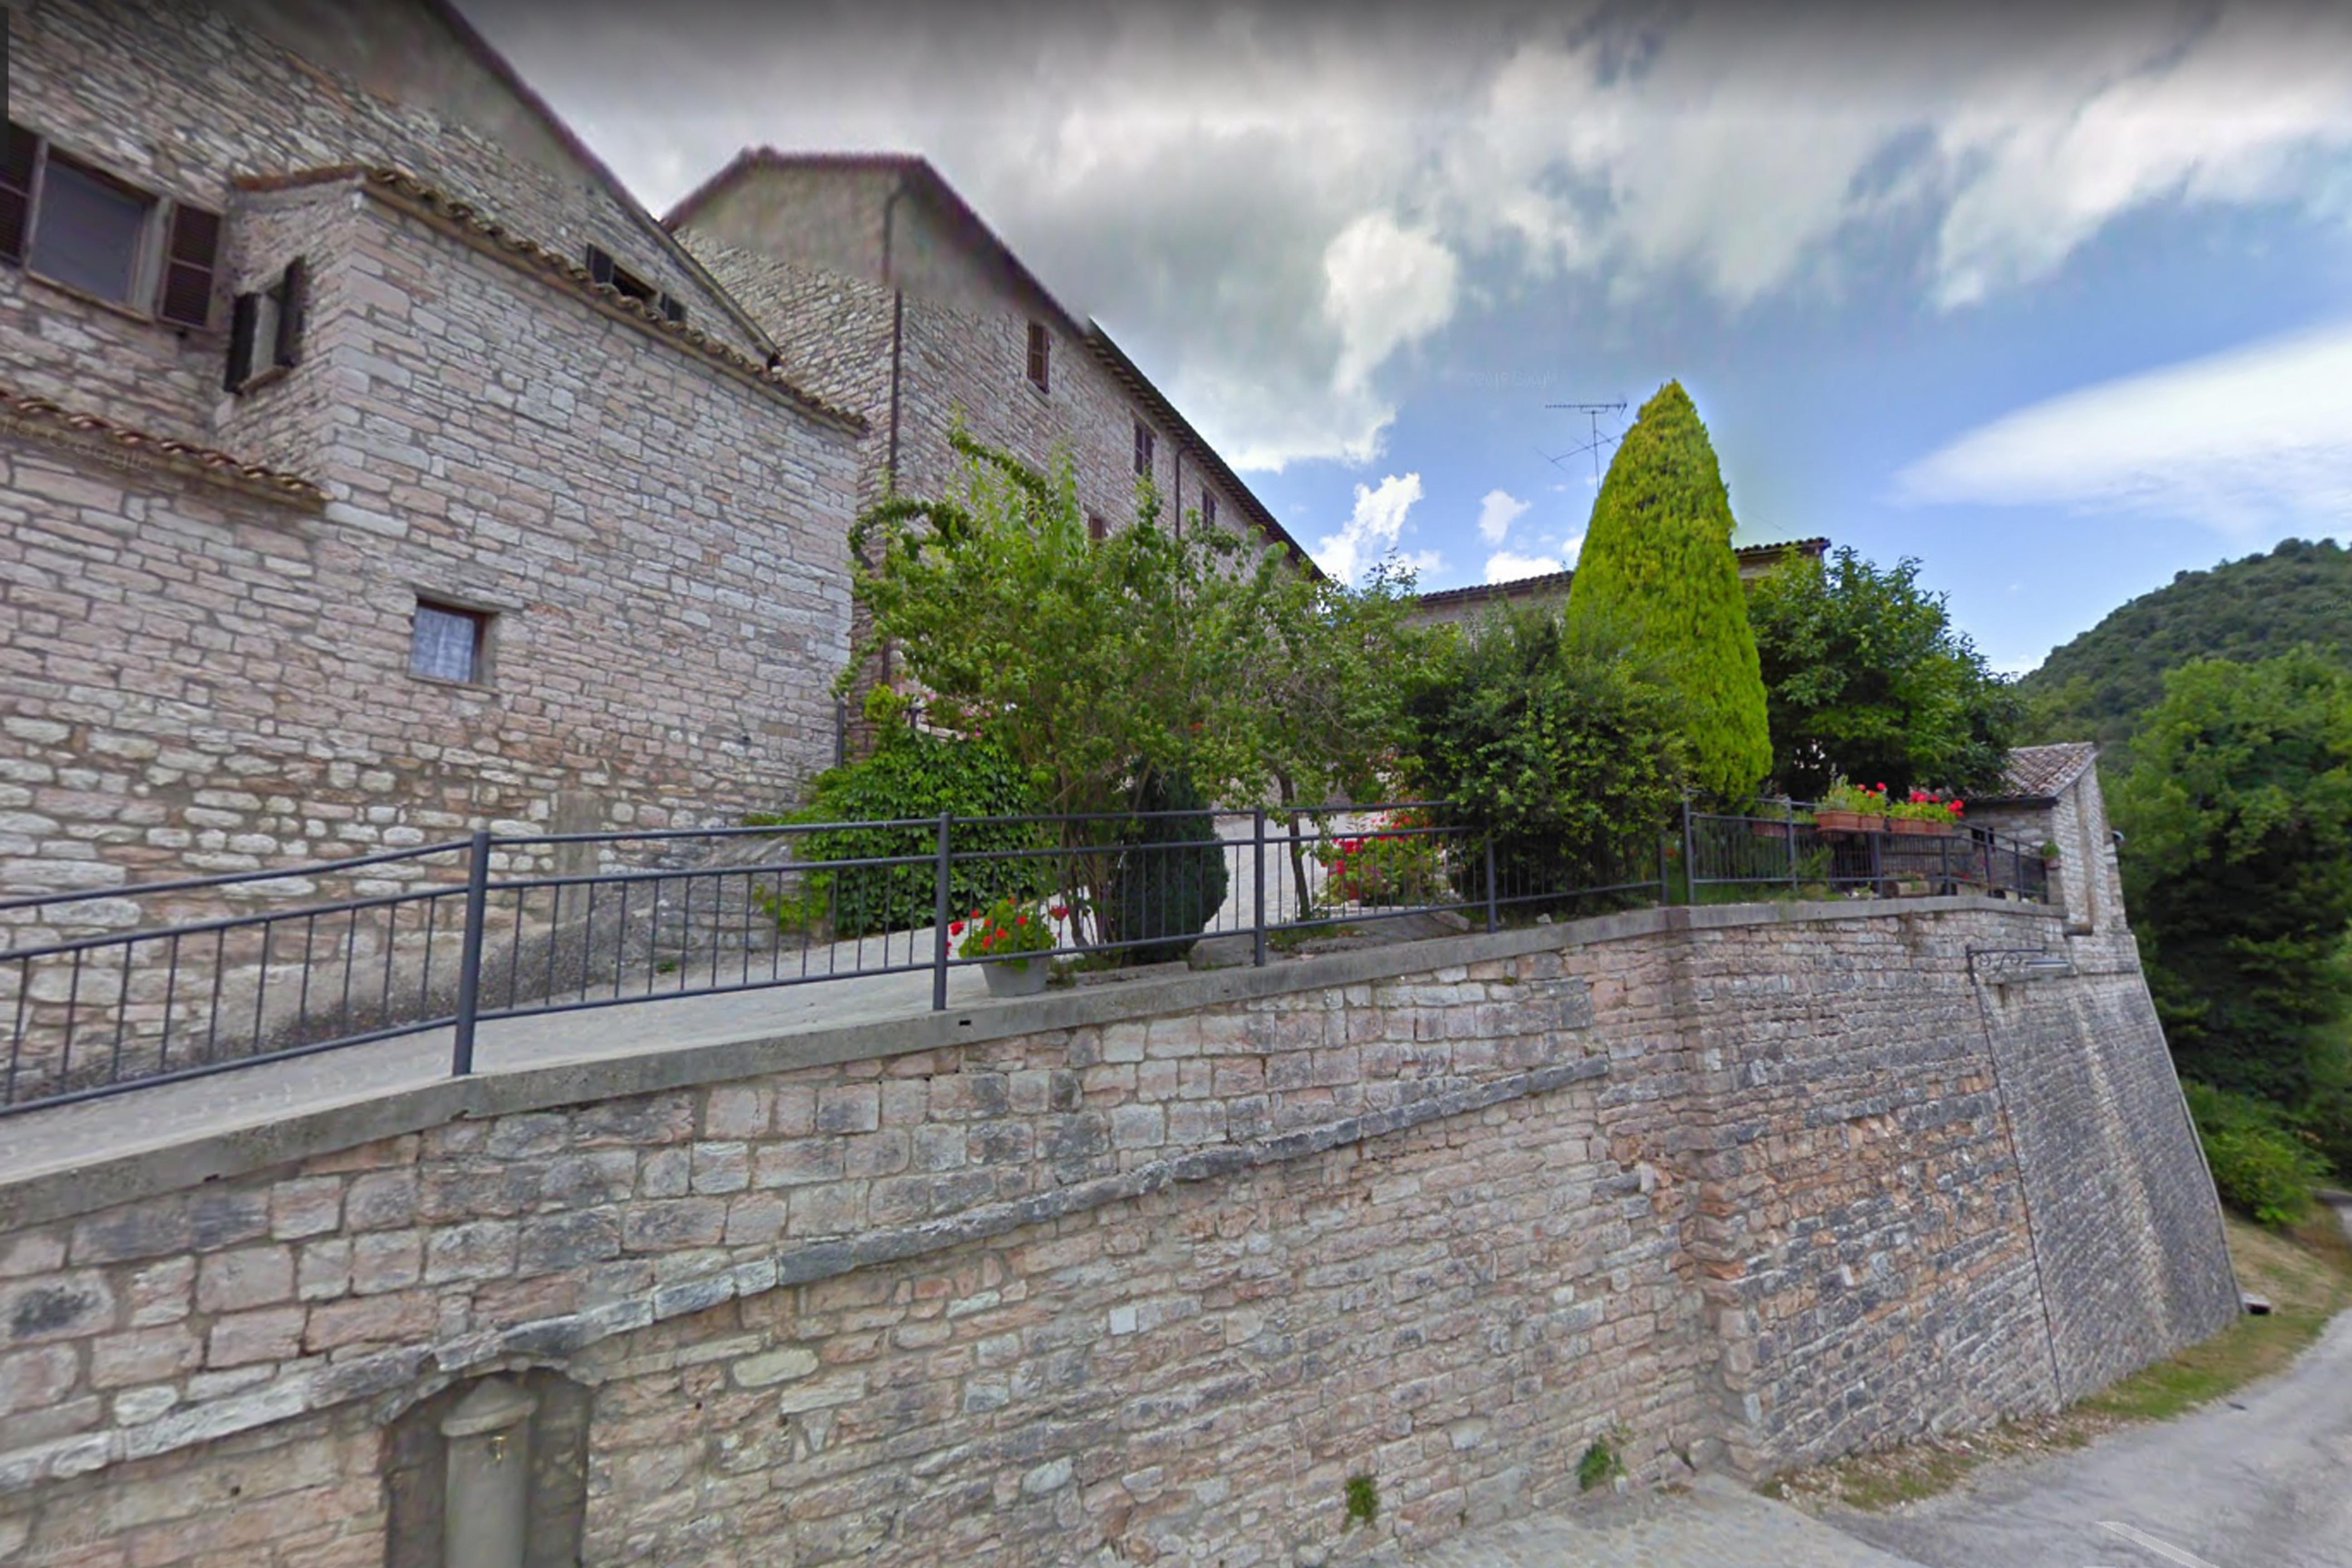 Mura di Torricella (mura, castellane) - Fossombrone (PU) 